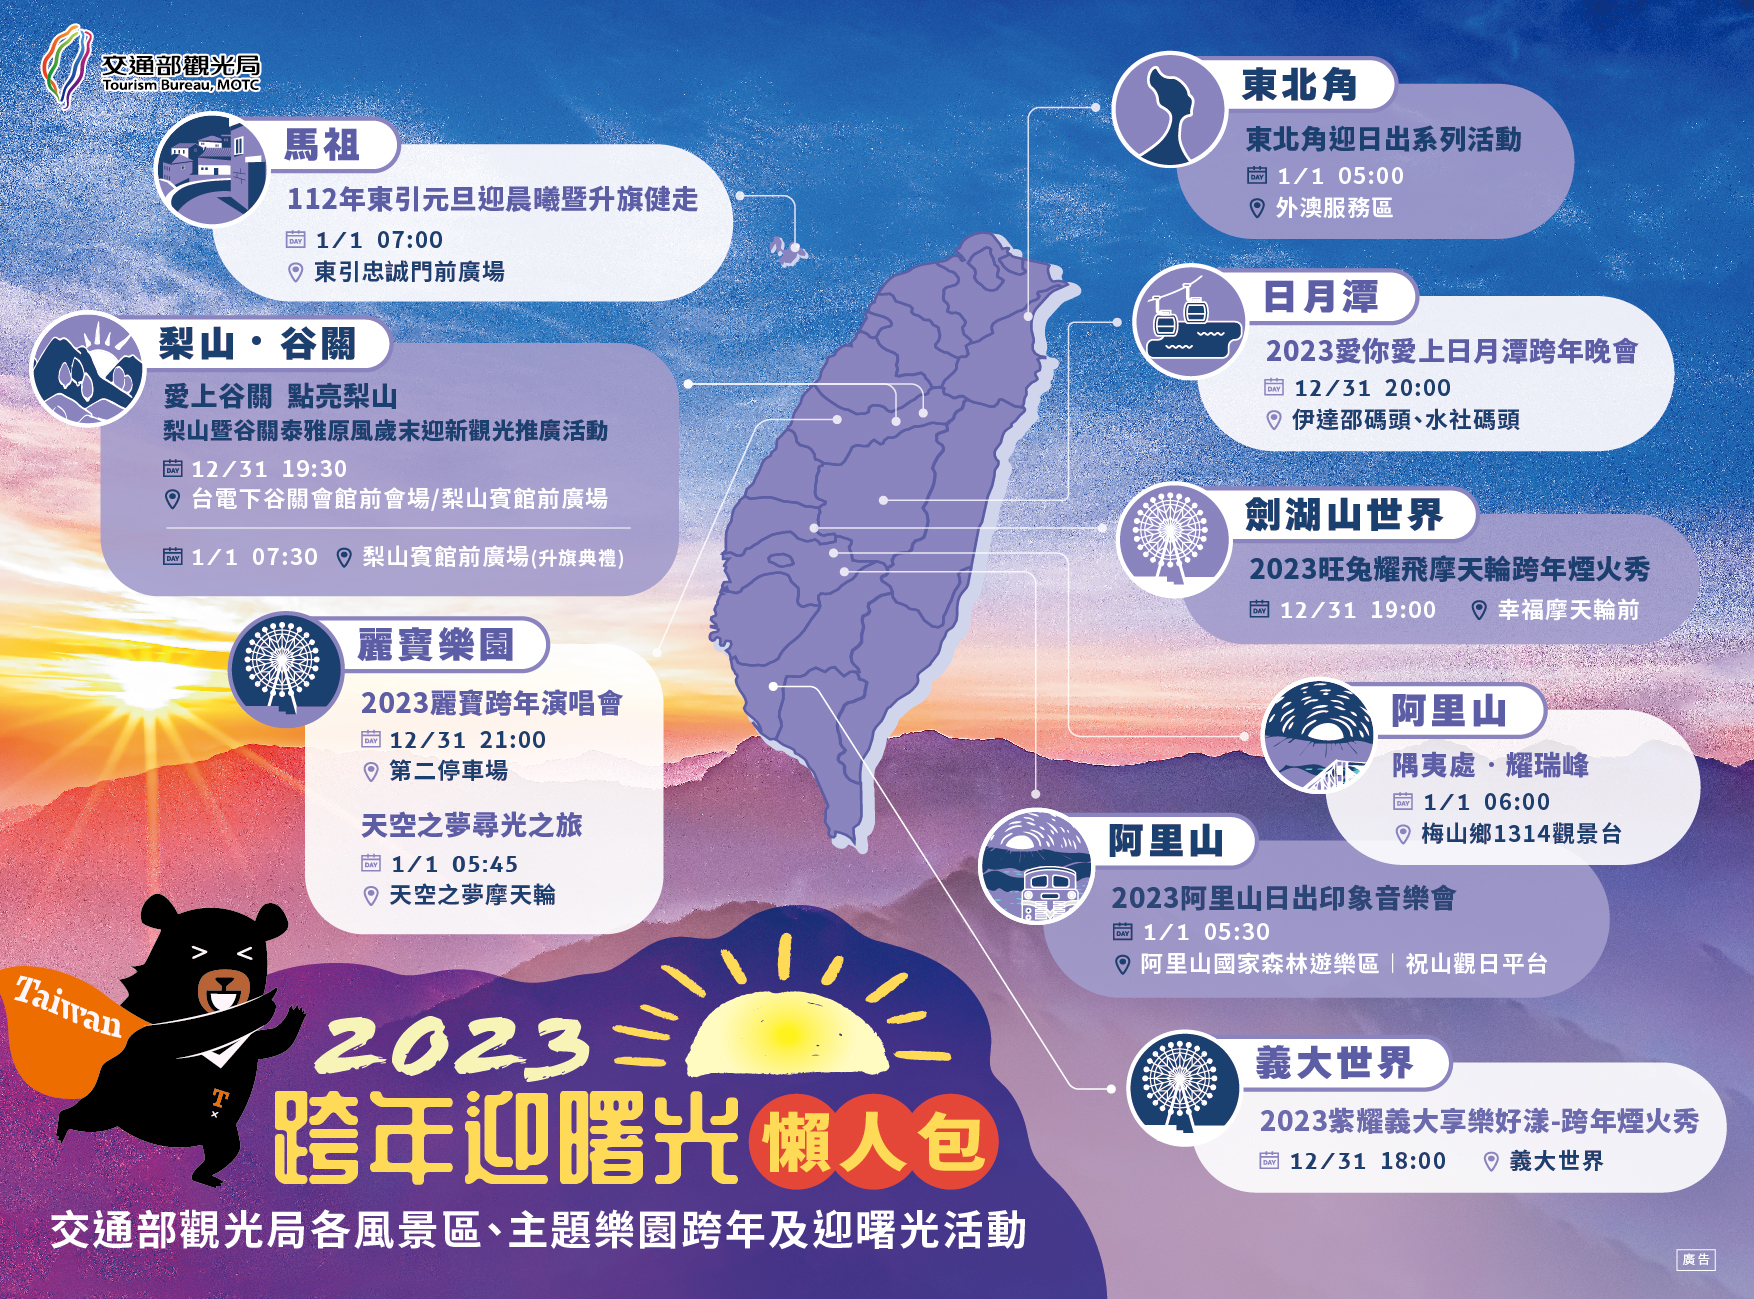 2023跨年迎曙光懶人包(全區)